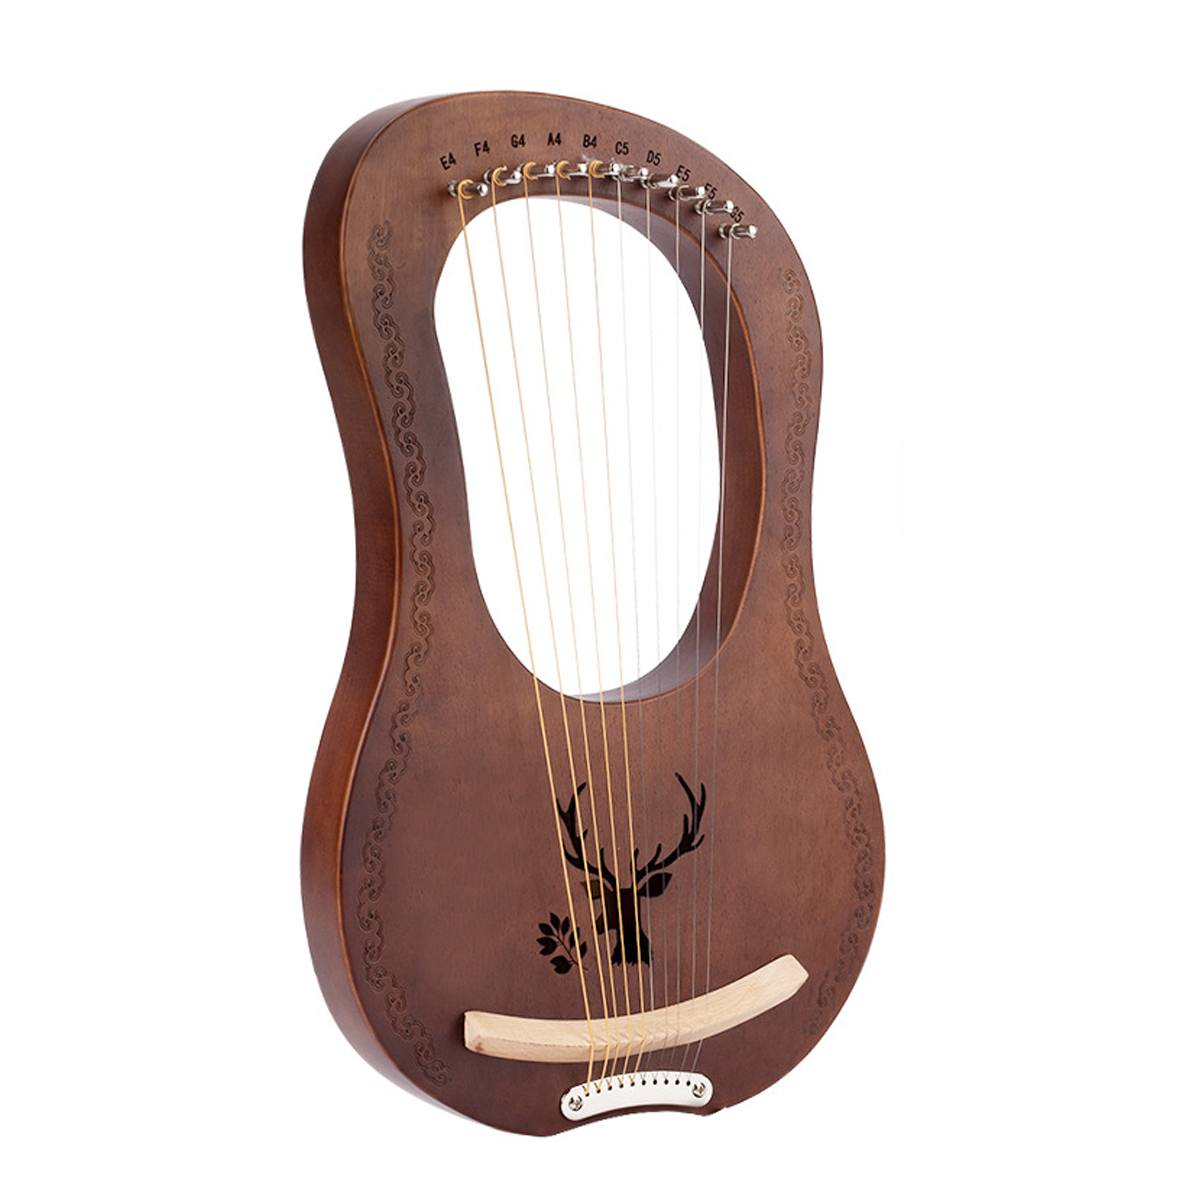 Træ mahogni 7 -strenget lyre harpe strenge musikinstrument med pickup tuning hammer rengøringsklud harpe instrument: Elg mørkebrun